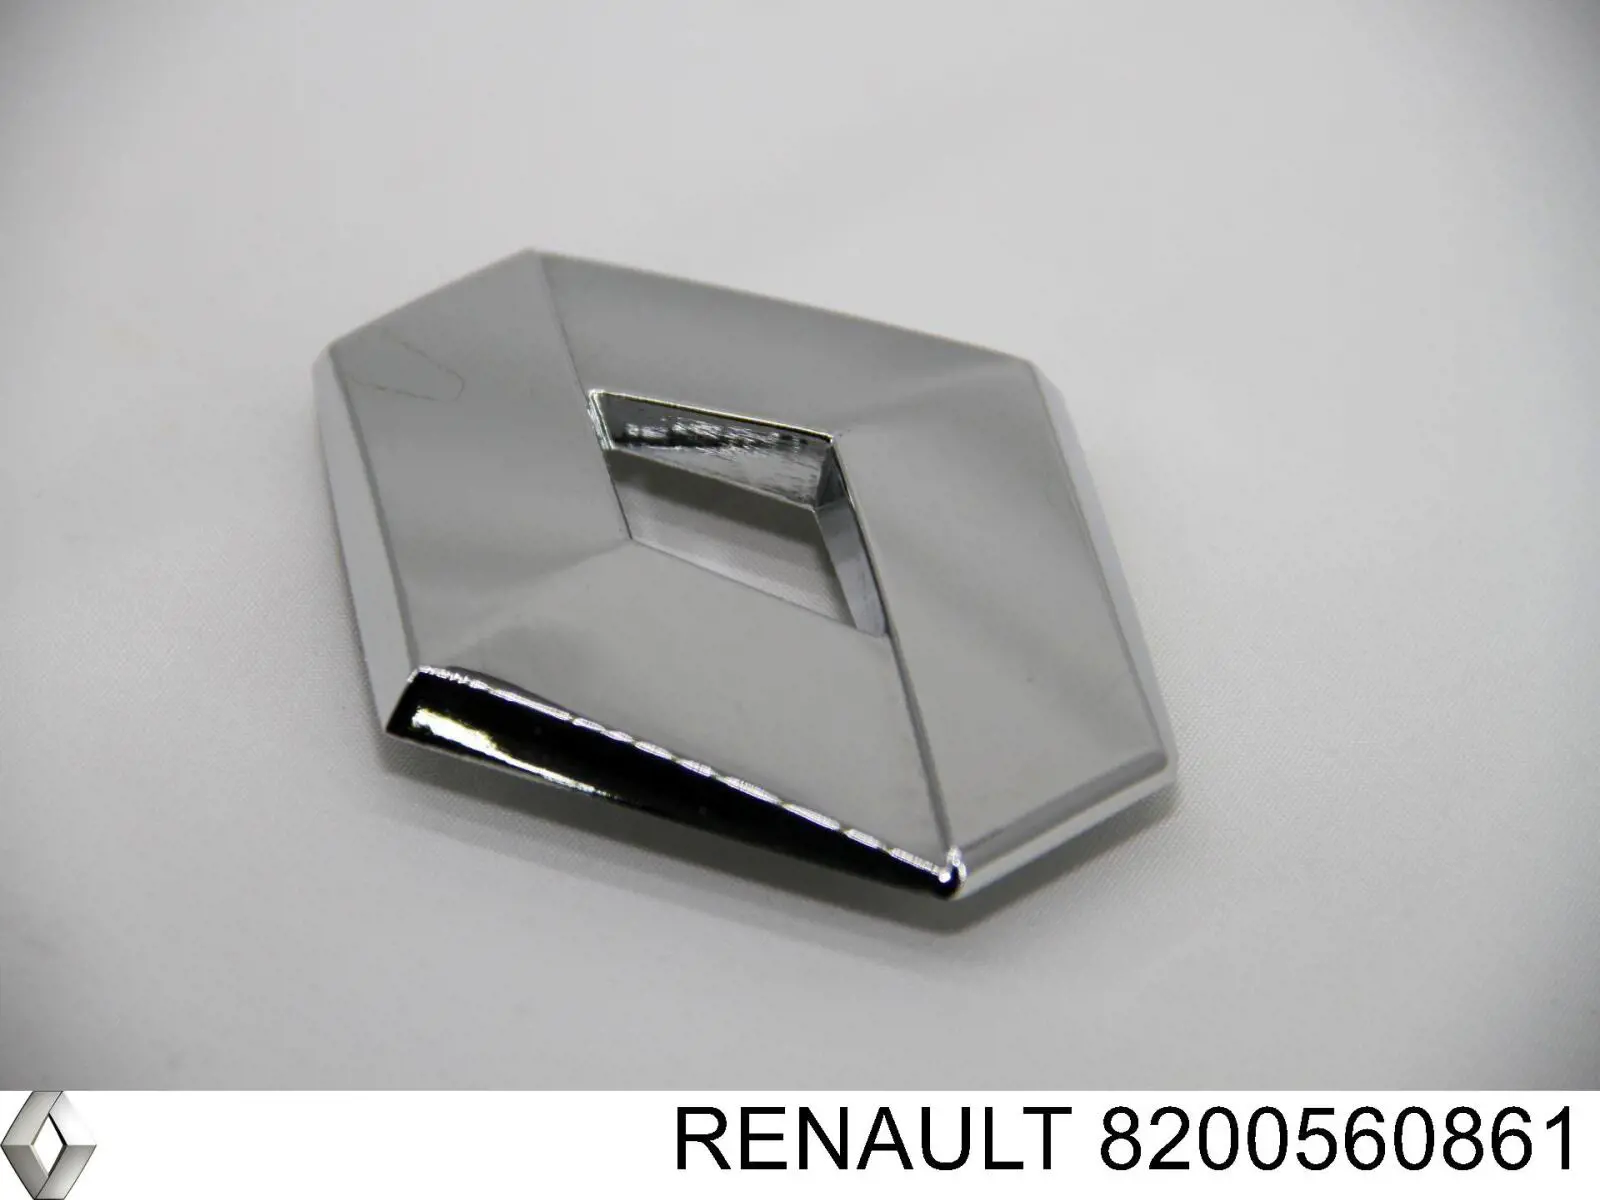 Emblema de tampa de porta-malas (emblema de firma) para Renault SANDERO 